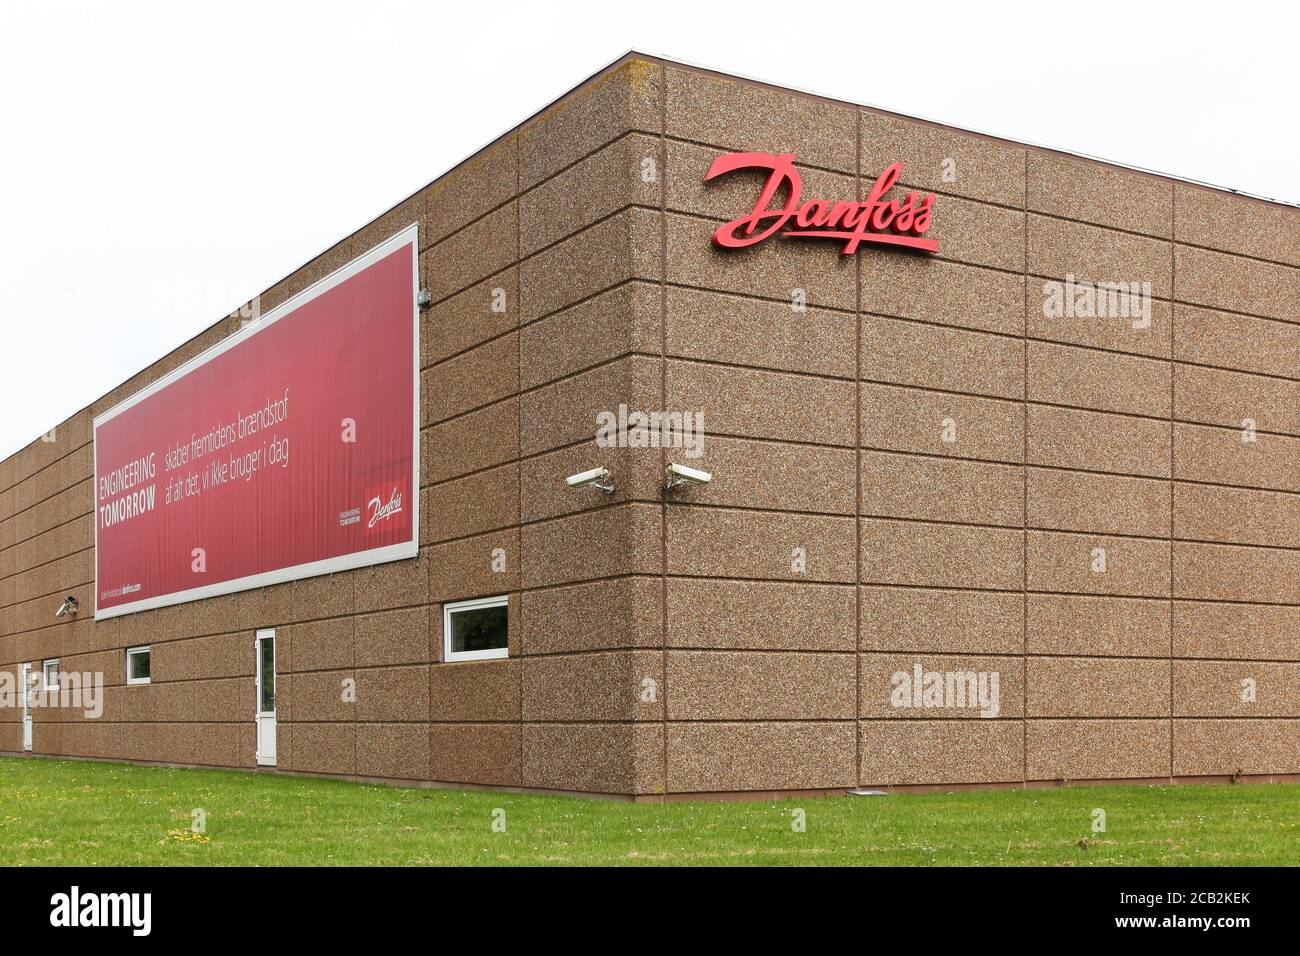 Titer : Vejle, Dänemark - 29. Mai 2016: Die Danfoss Group ist ein globaler Hersteller von Produkten und Dienstleistungen, die in Bereichen wie Kühlung von Lebensmitteln und Klimaanlagen verwendet werden Stockfoto